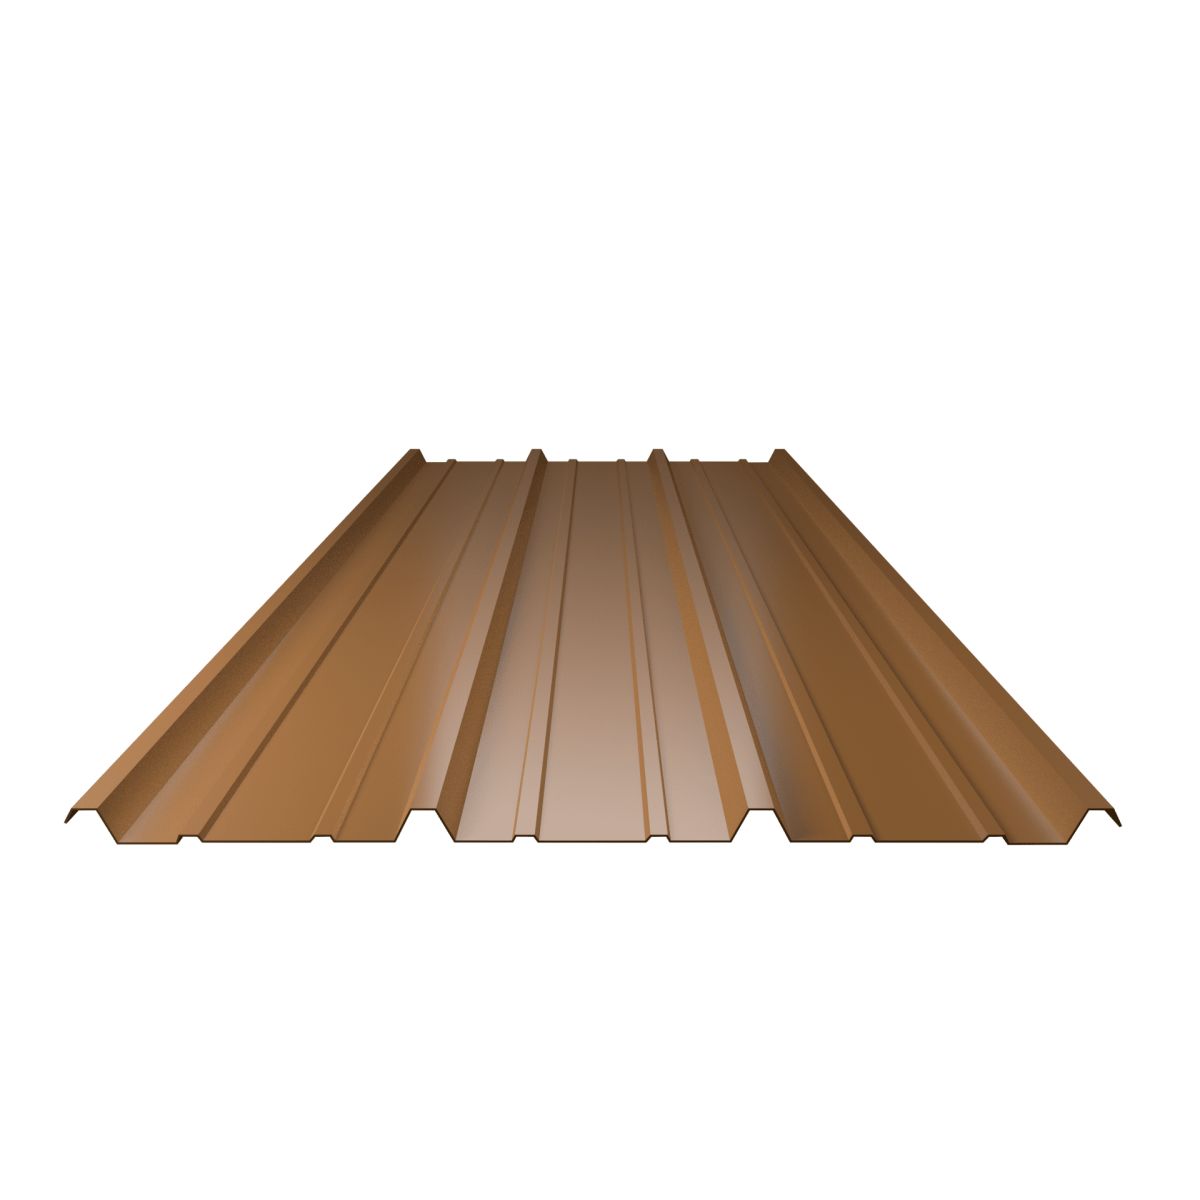 Tôle de toiture acier galvanisée - Ral 8014 (brun sépia) - Longueur 3m